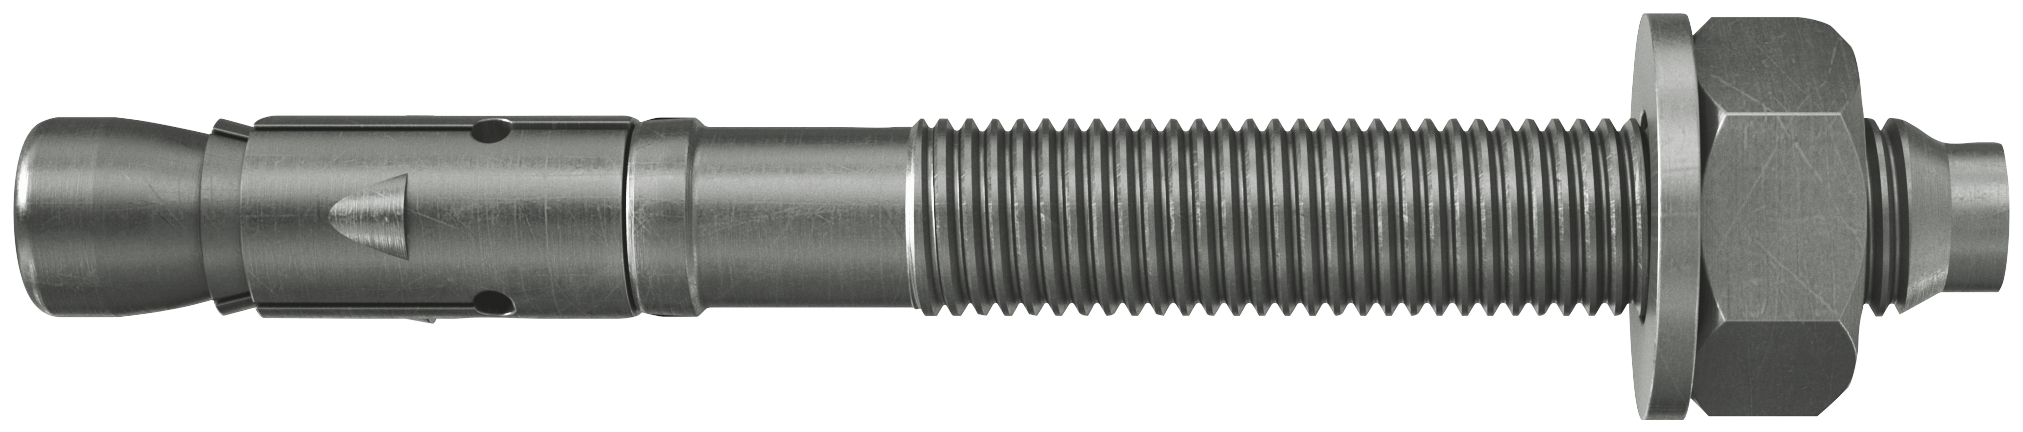 fischer Tassello acciaio FAZ II 8/30 A4 (50 Pz.) L'ancorante ad espansione ad alte prestazioni per carichi statici su calcestruzzo fessurato e per applicazioni sismiche. Versione in acciaio inossidabile con classe di resistenza alla corrosione CRC III..